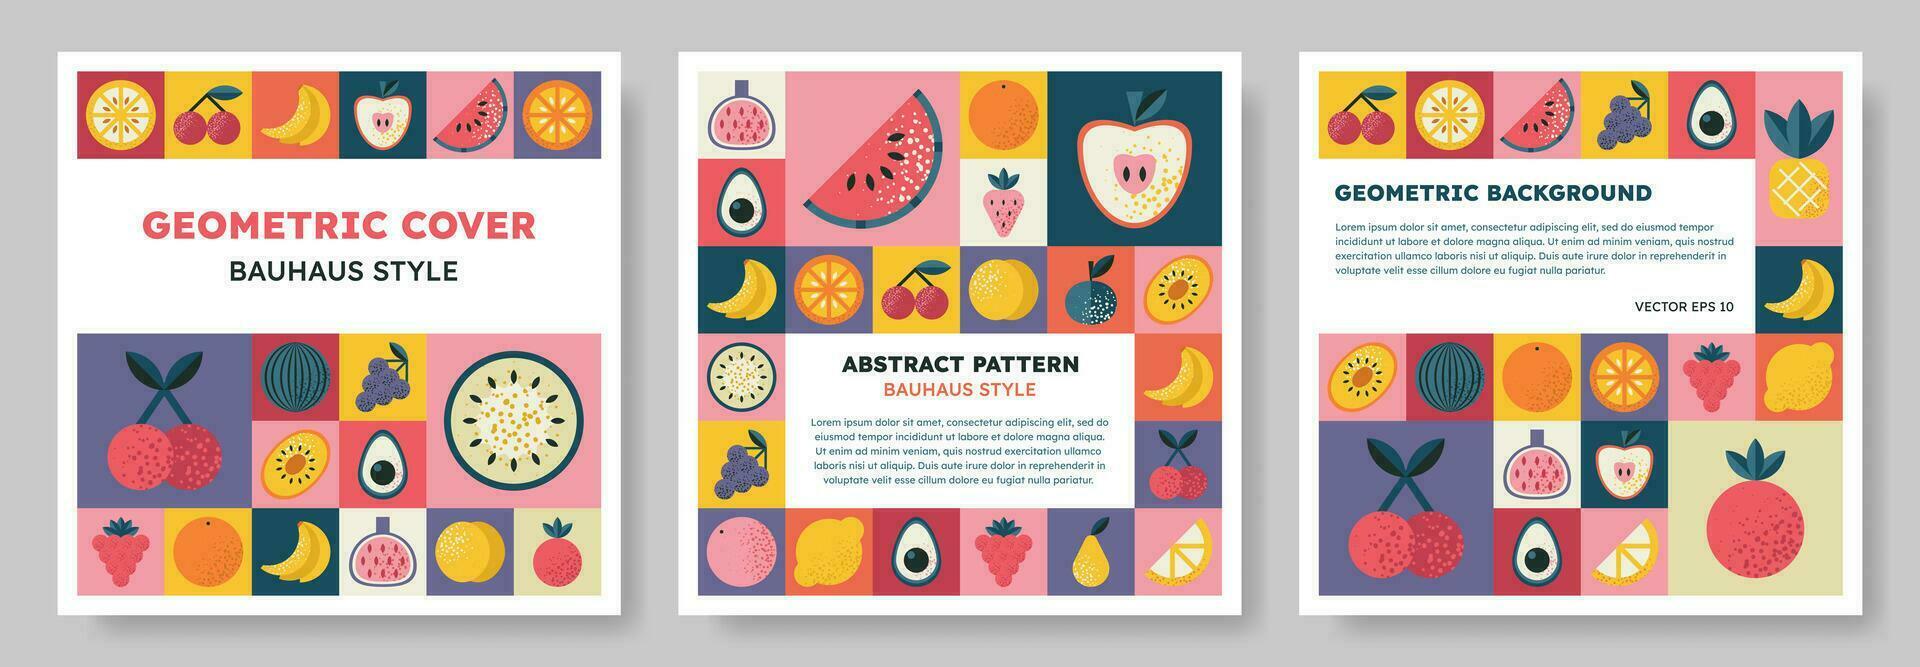 uppsättning av isolerat abstrakt geometrisk mönster bakgrund i bauhaus stil med olika frukt och bär. färgrik vektor design mall för omslag, affisch, broschyr, baner, meny. retro illustration.